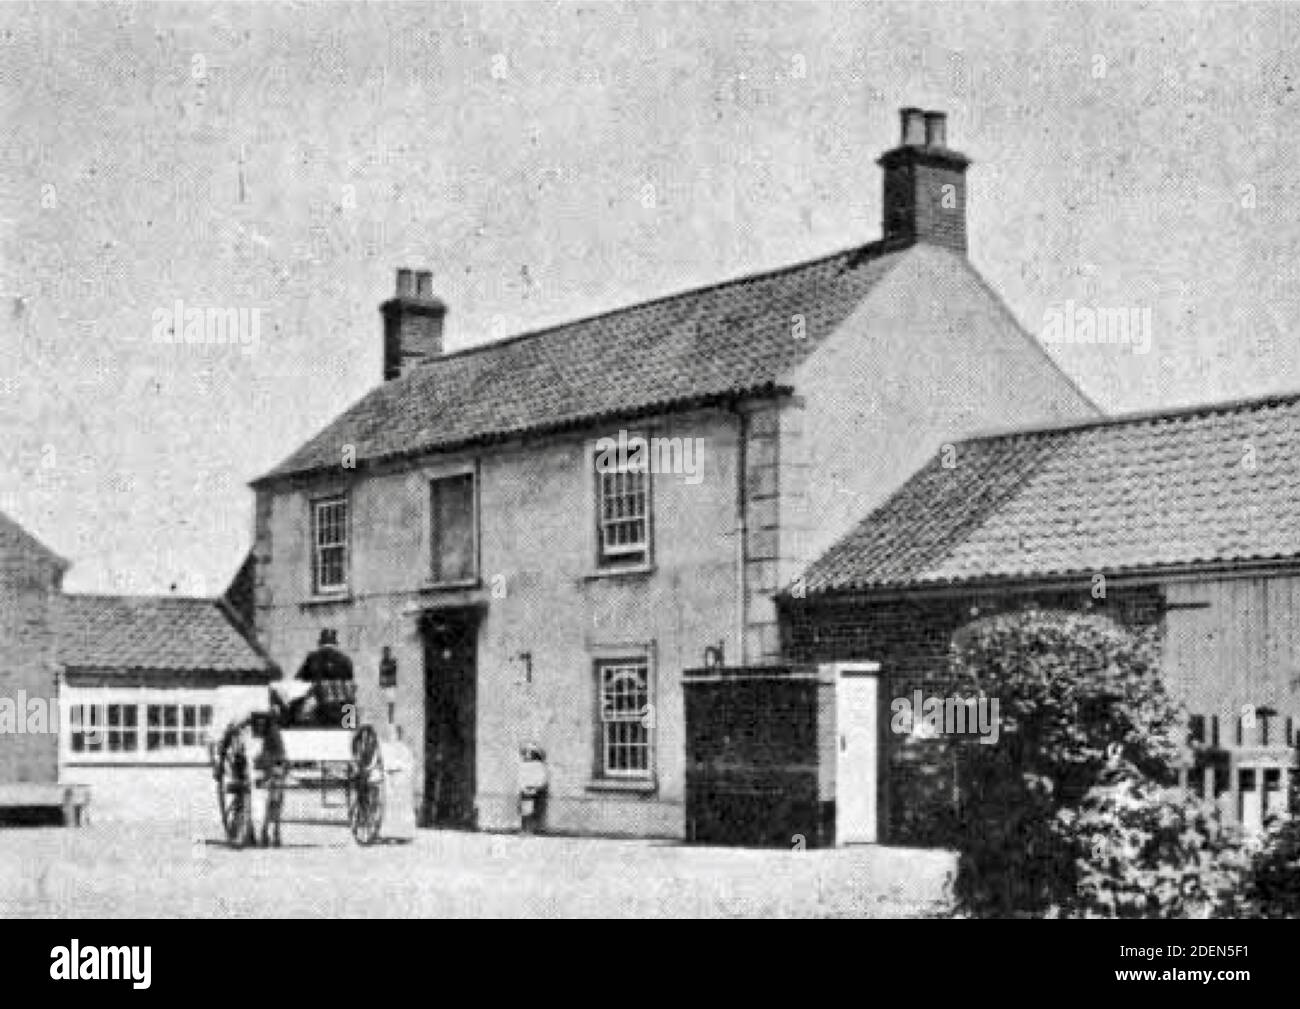 Photographie ancienne du Plough Inn à Blundeston, Ipswich, Angleterre. Pub de classe 2 mentionné dans David Copperfield par Charles Dickens. Banque D'Images